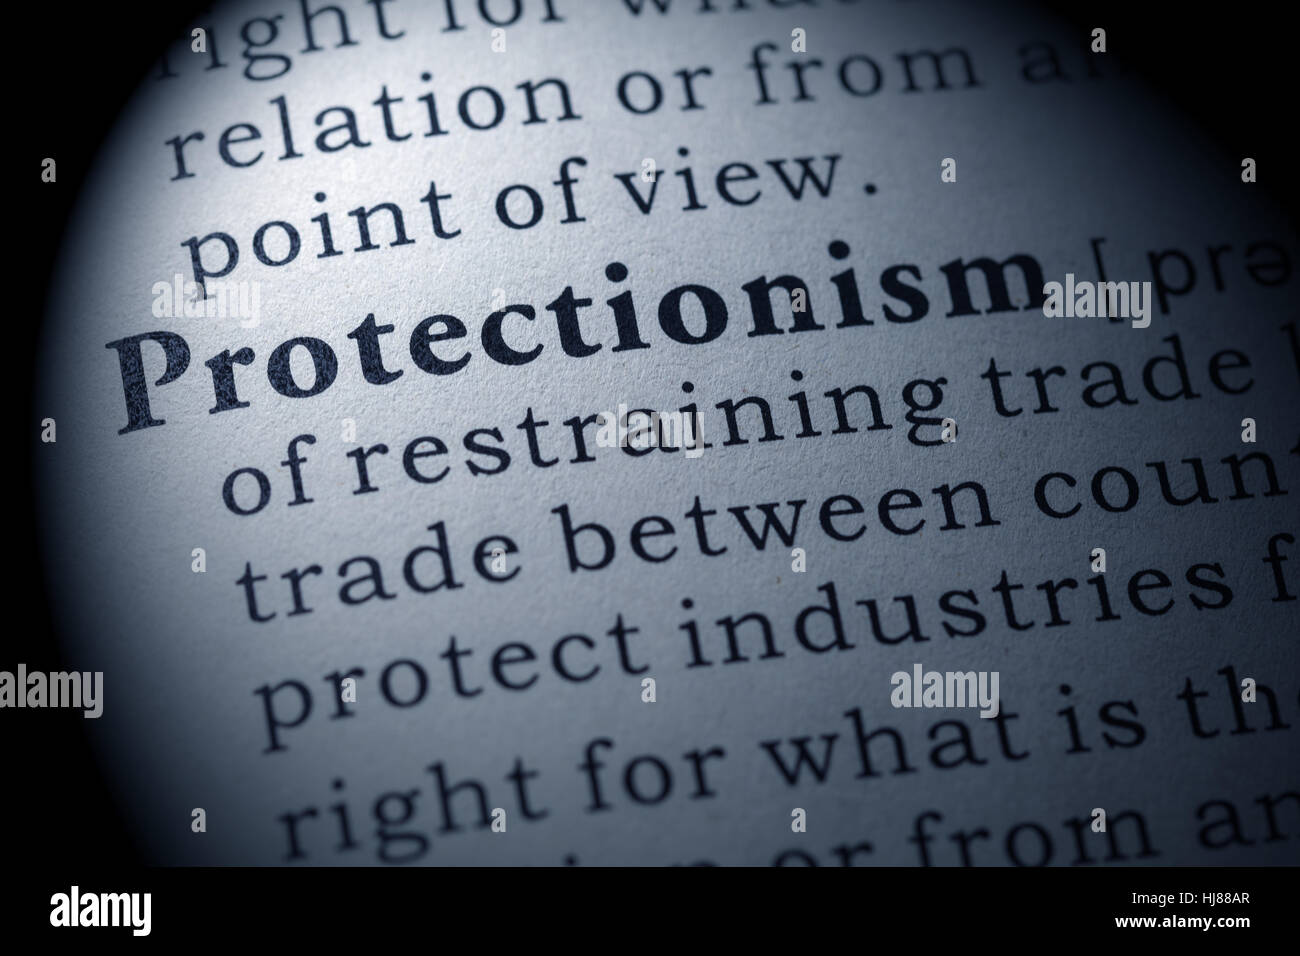 Fake Dizionario, definizione del dizionario della parola protezionismo. comprendente i principali parole descrittive. Foto Stock